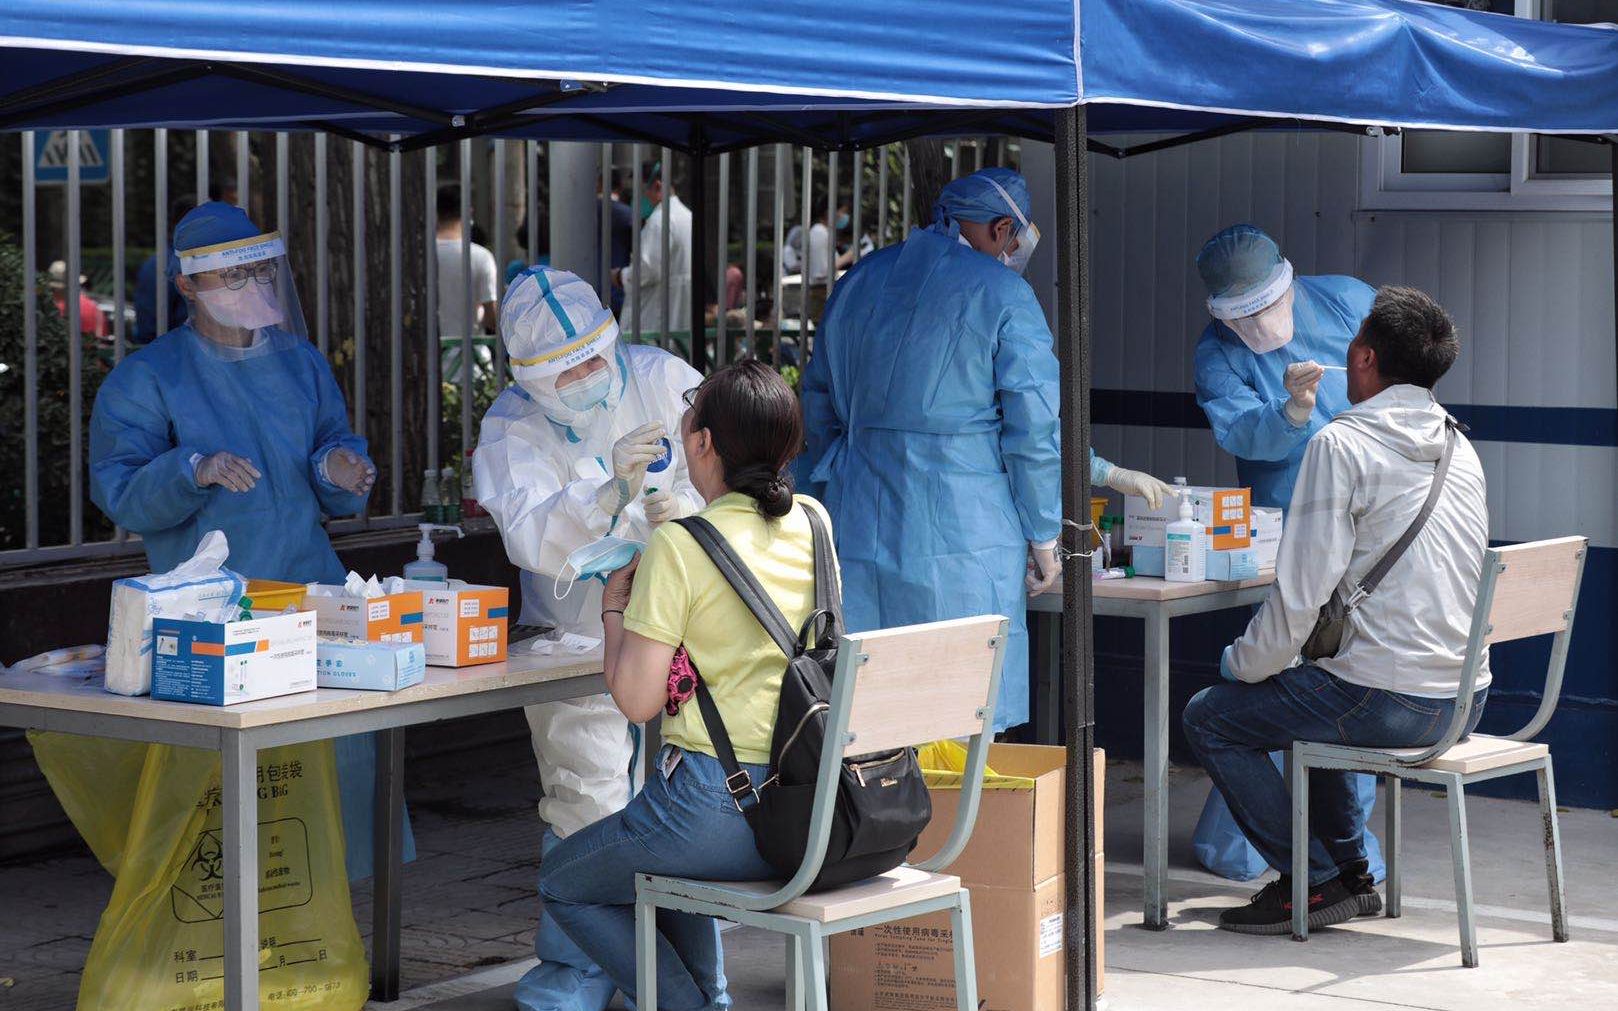 6月16日,北京世纪坛医院核酸检测采样点,工作人员为市民进行核酸采样